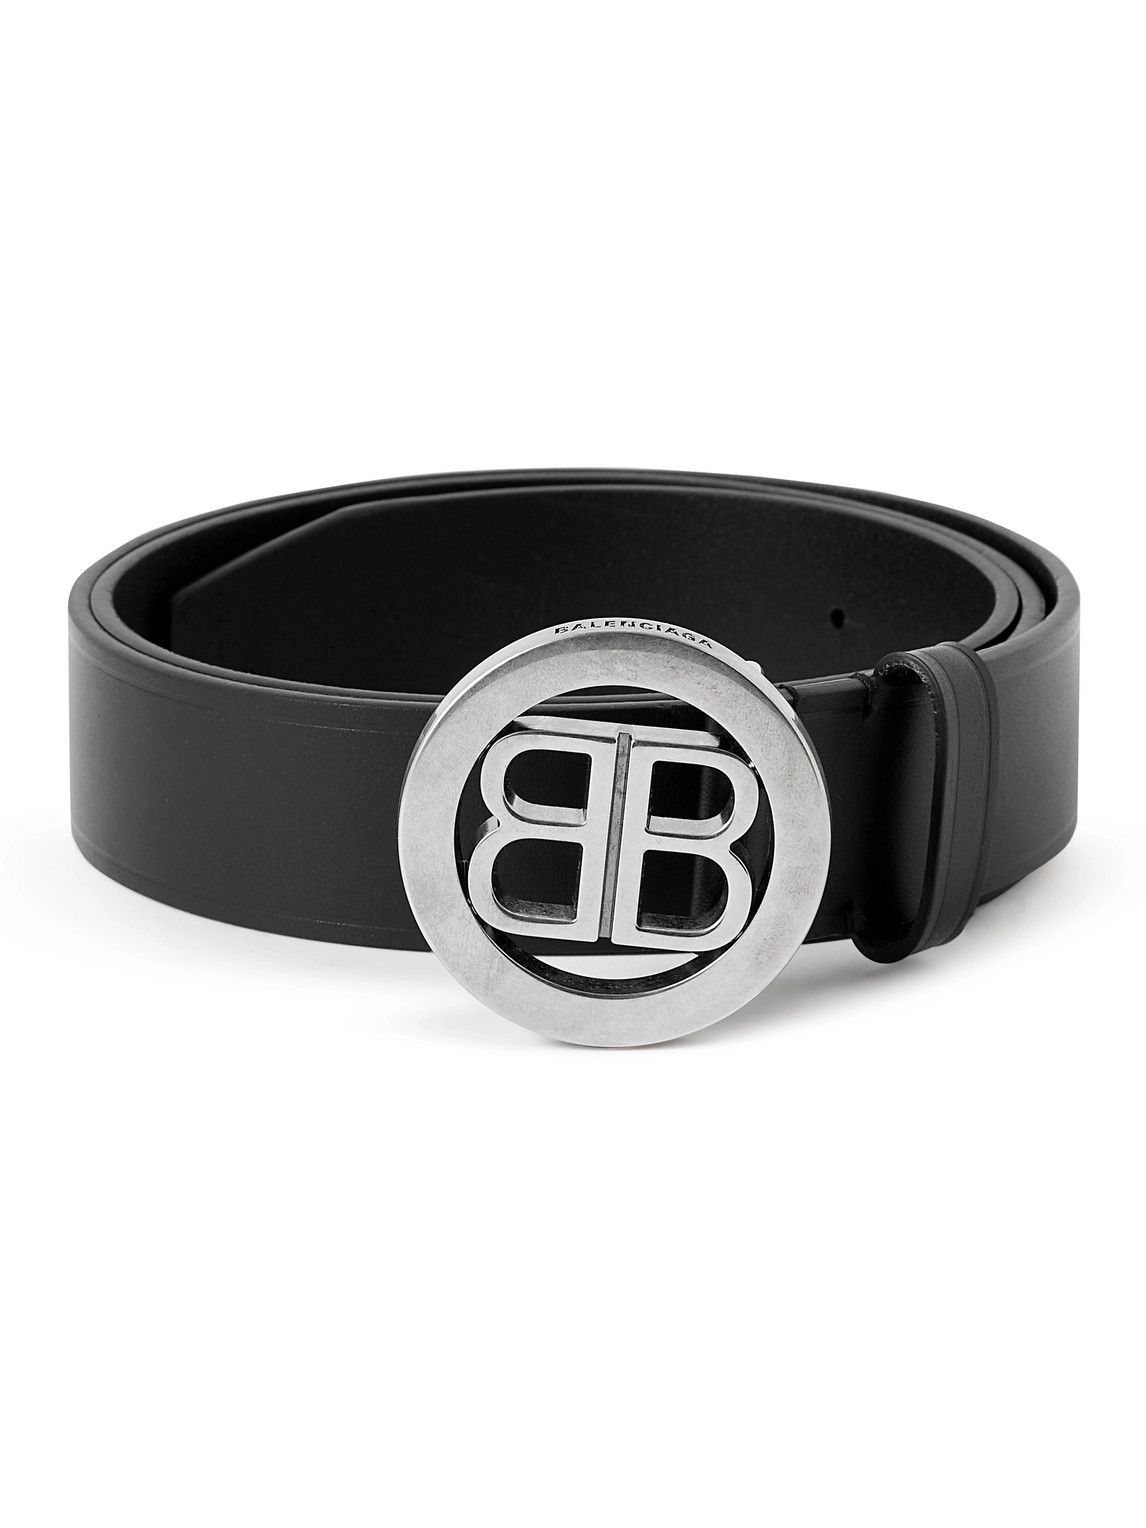 Balenciaga - 4cm Leather and Silver-Tone Belt - Black Balenciaga